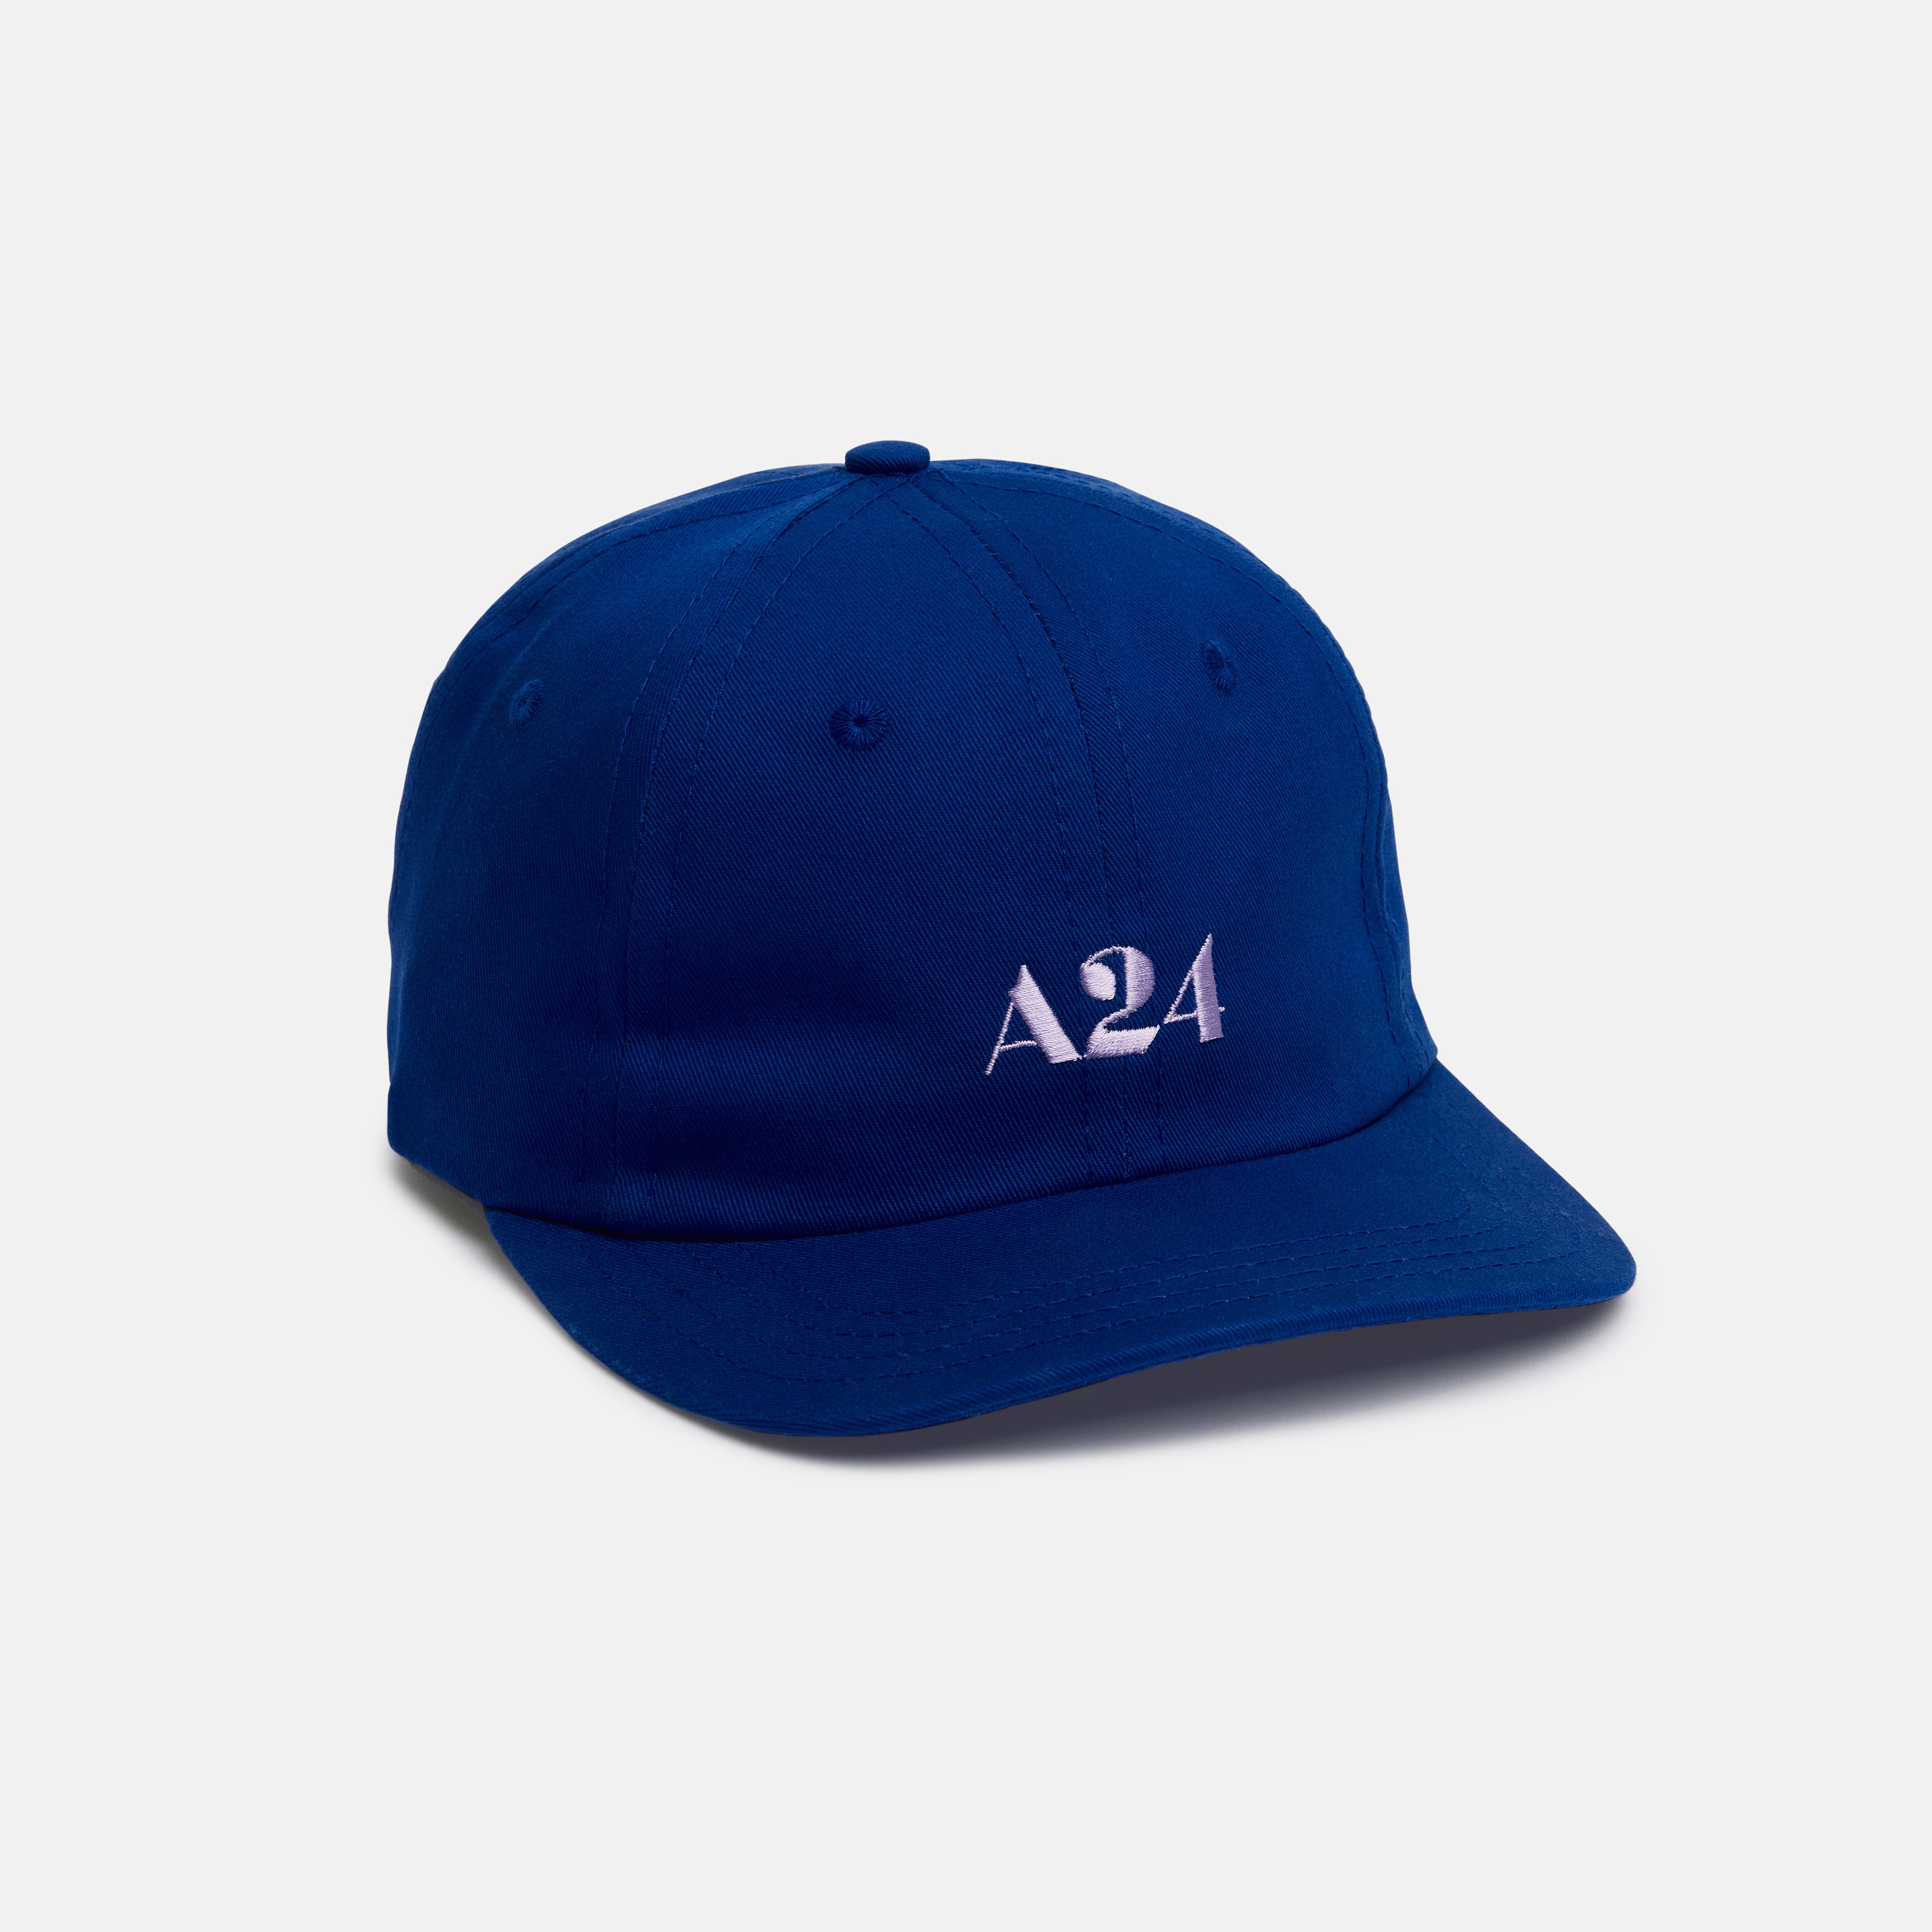 A24 CAP made in USA